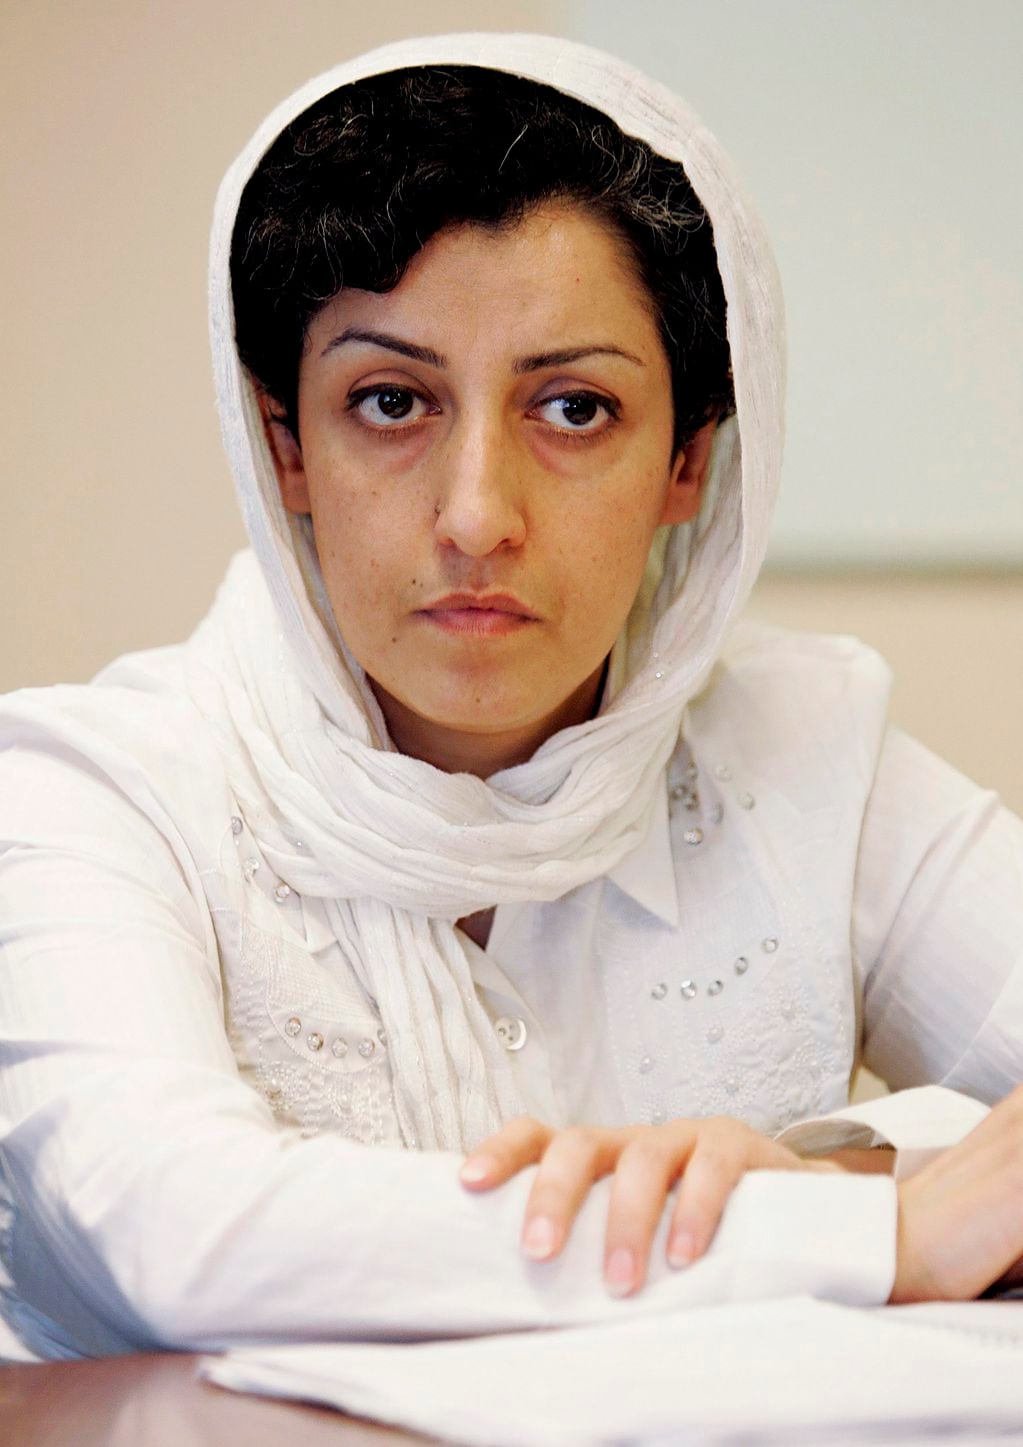 En esta imagen de archivo, la iraní Narges Mohammadi, delegada del Centro de Defensa de los Derechos Humanos, durante una conferencia de prensa acerca de la situación humanitaria en Irán, en la sede de Naciones Unidas en Ginebra, Suiza, el 9 de junio de 2008. (Magali Girardin/Keystone vía AP, archivo)